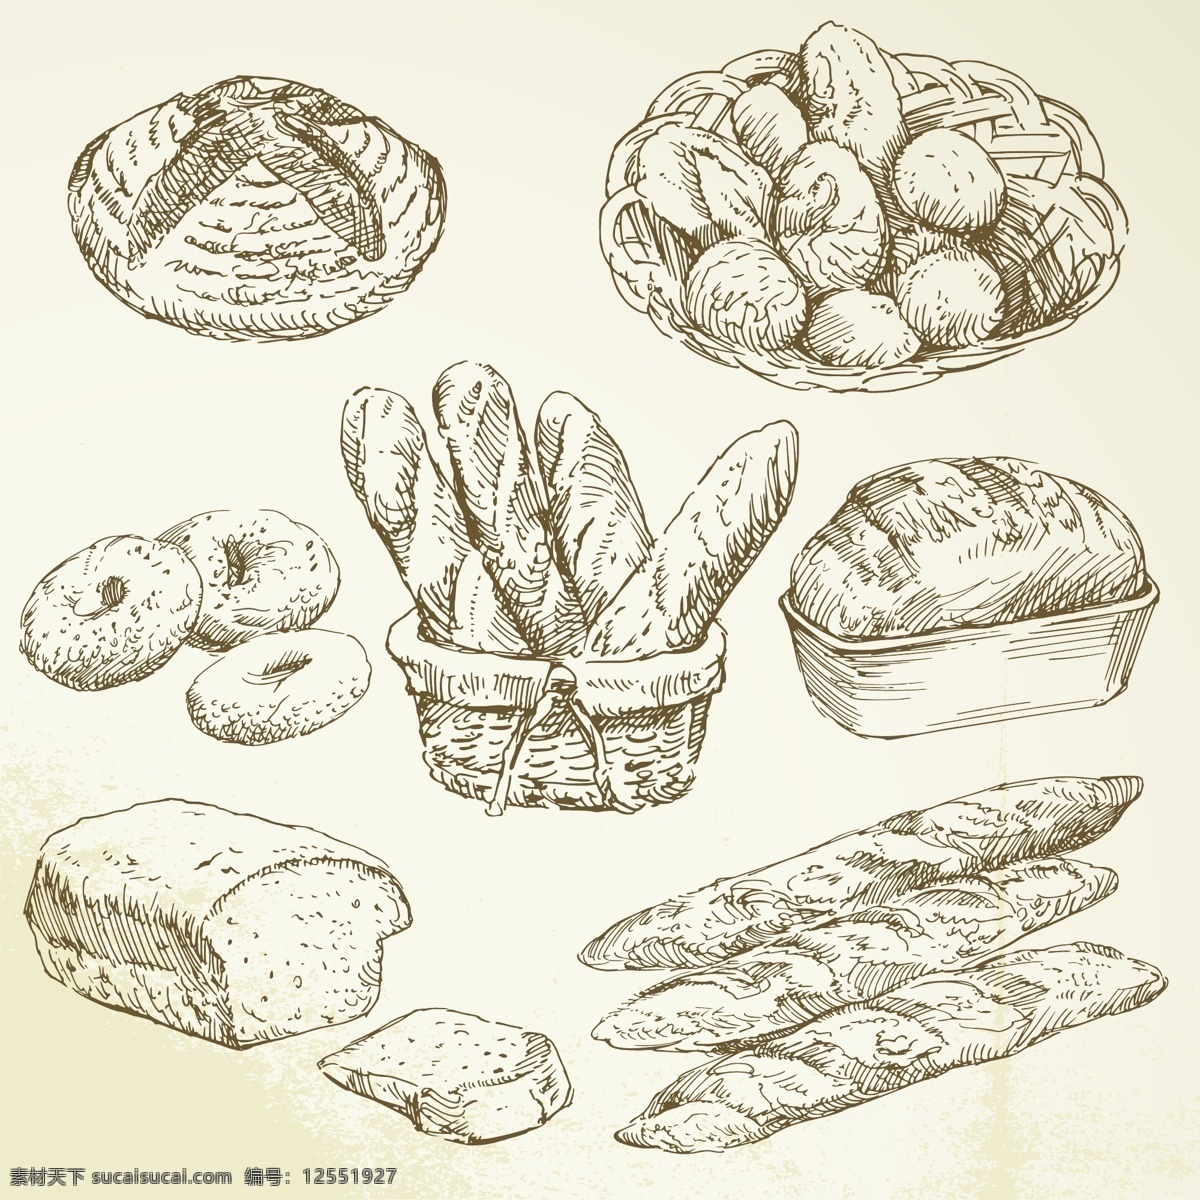 餐饮美食 插画 蛋糕 咖啡厅 面包 生活百科 食物 矢量素材 手绘 矢量 模板下载 手绘食物 线稿 速写 素描 西餐 插画集